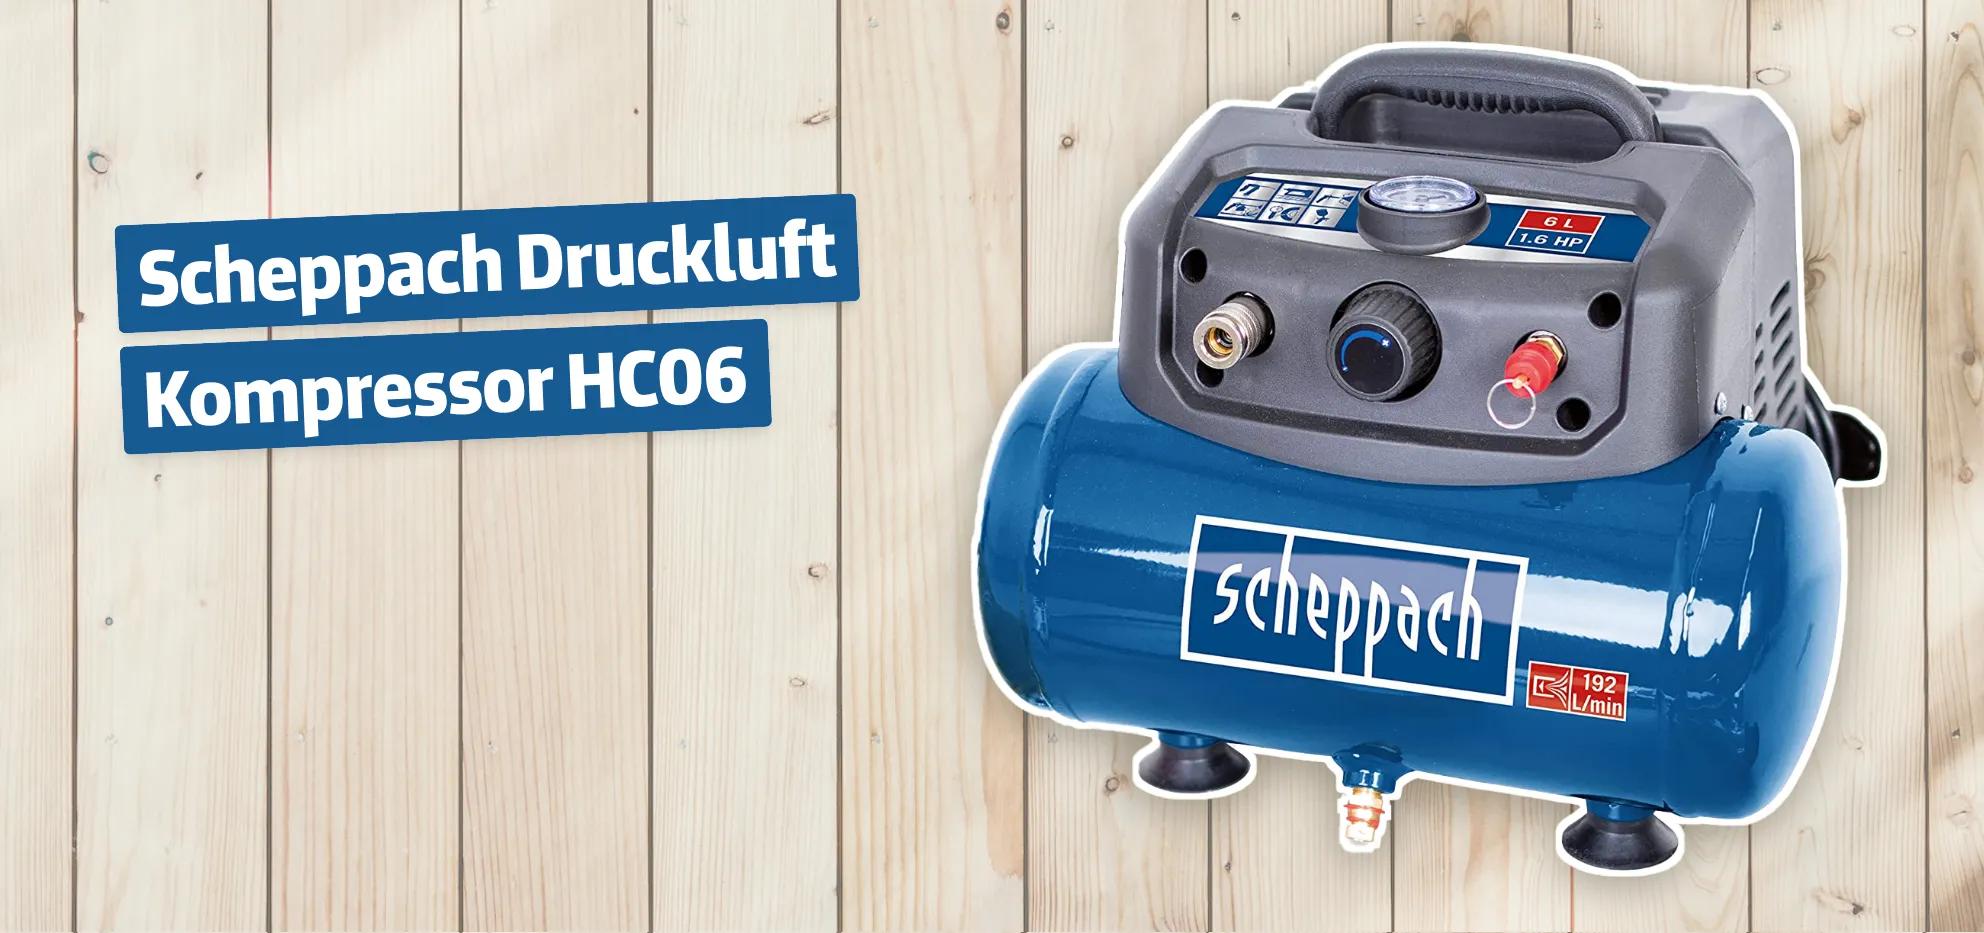 Scheppach Druckluft Kompressor HC06